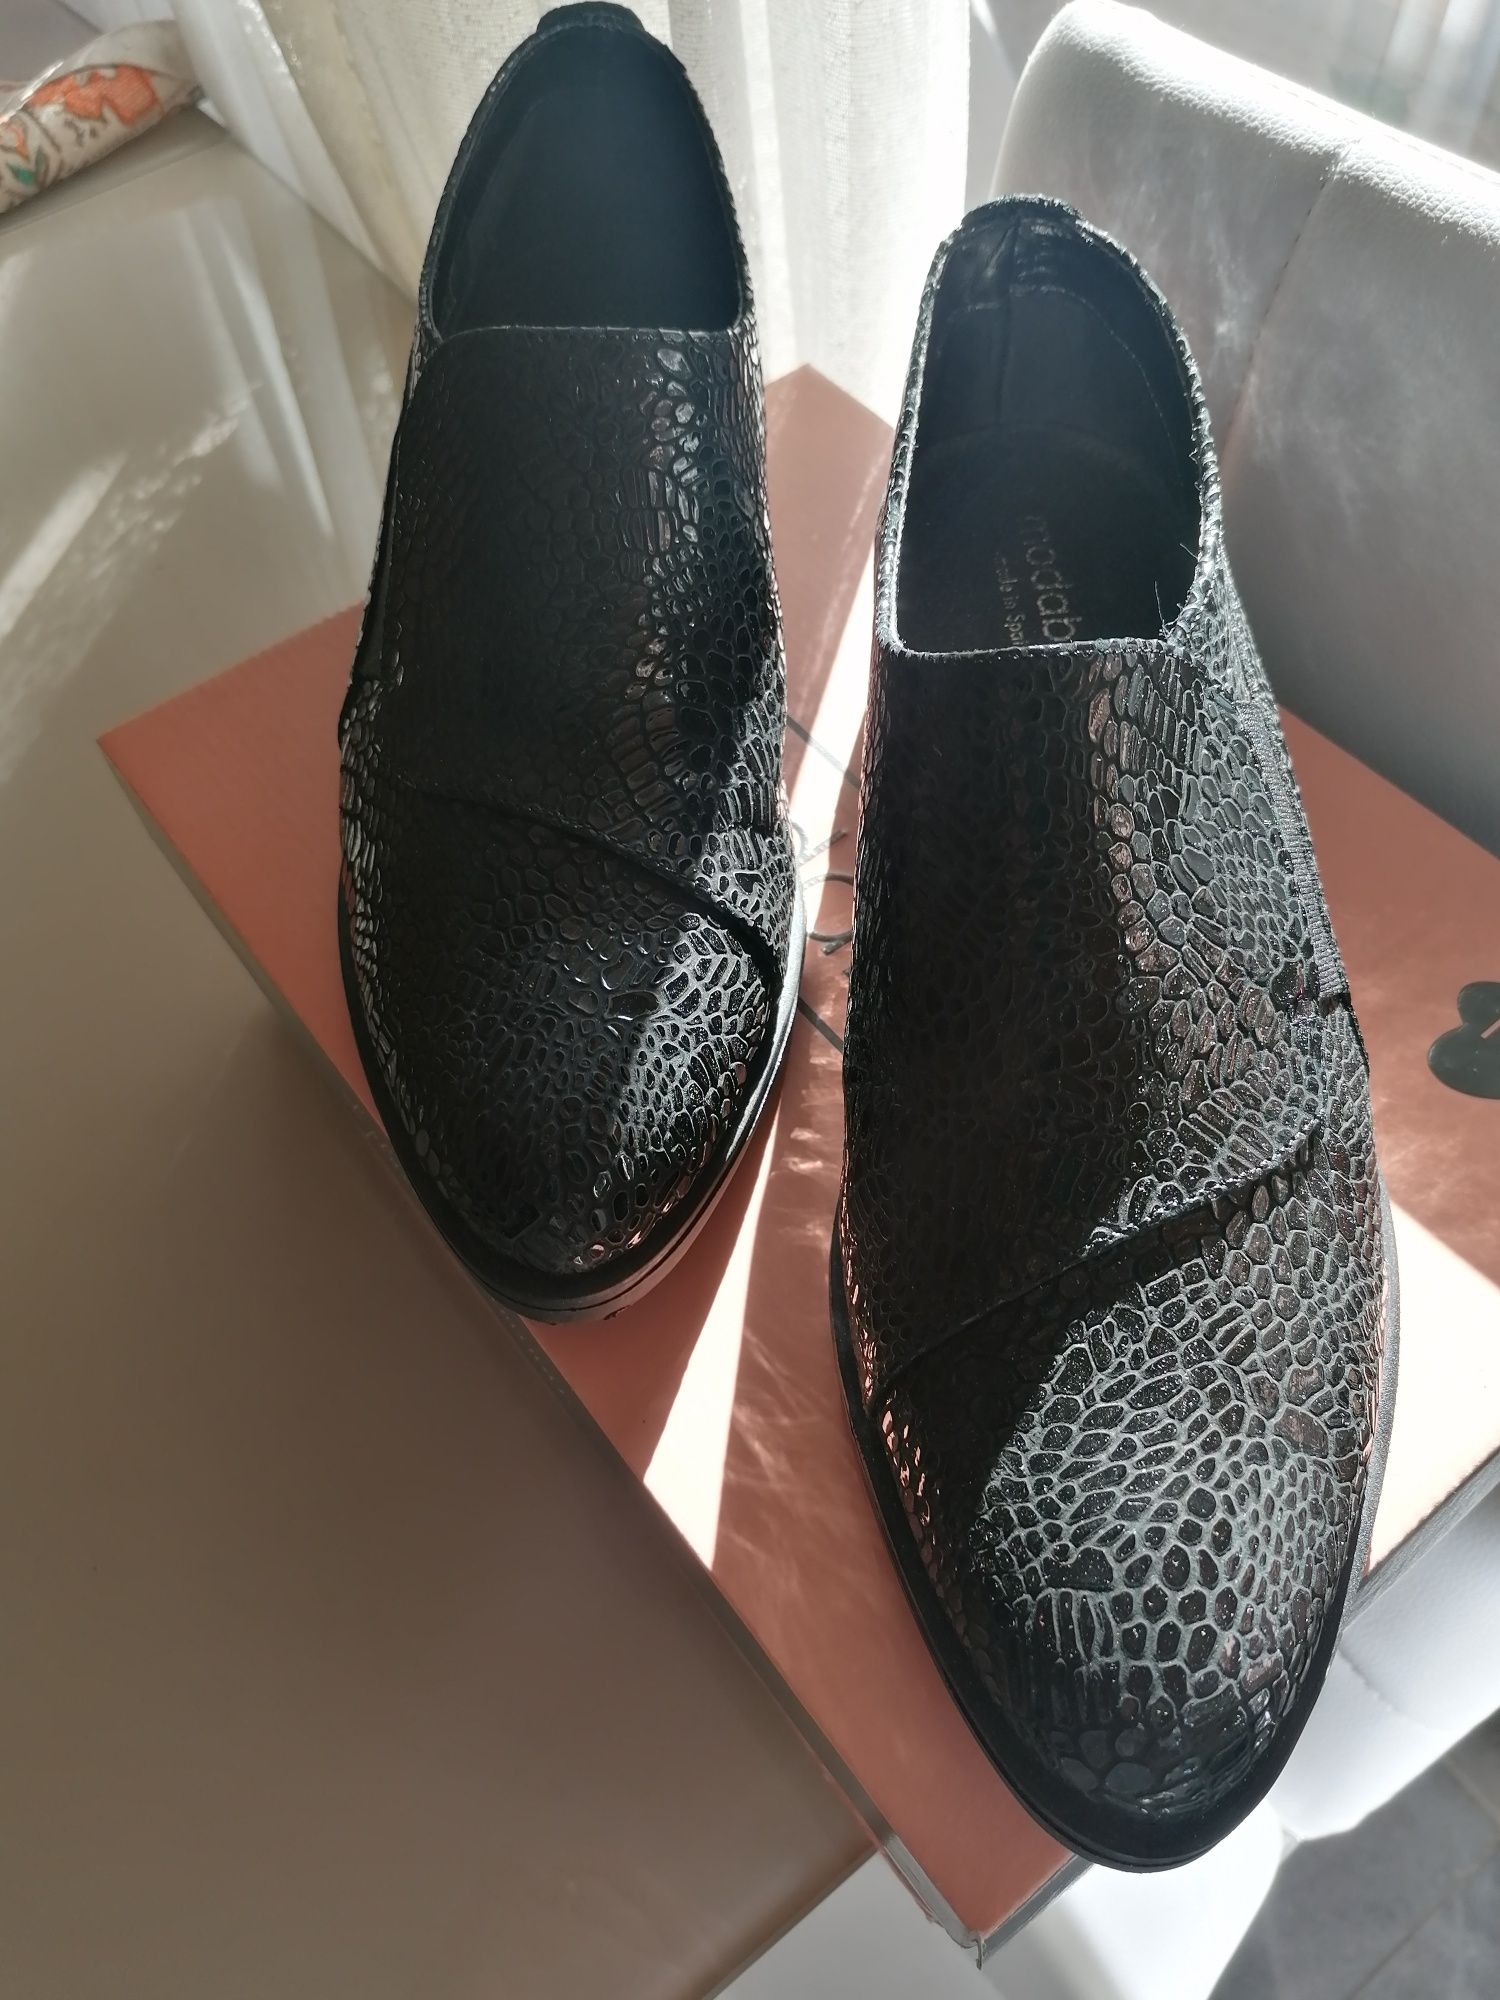 Испански обувки цвят черни от естествена кожа.